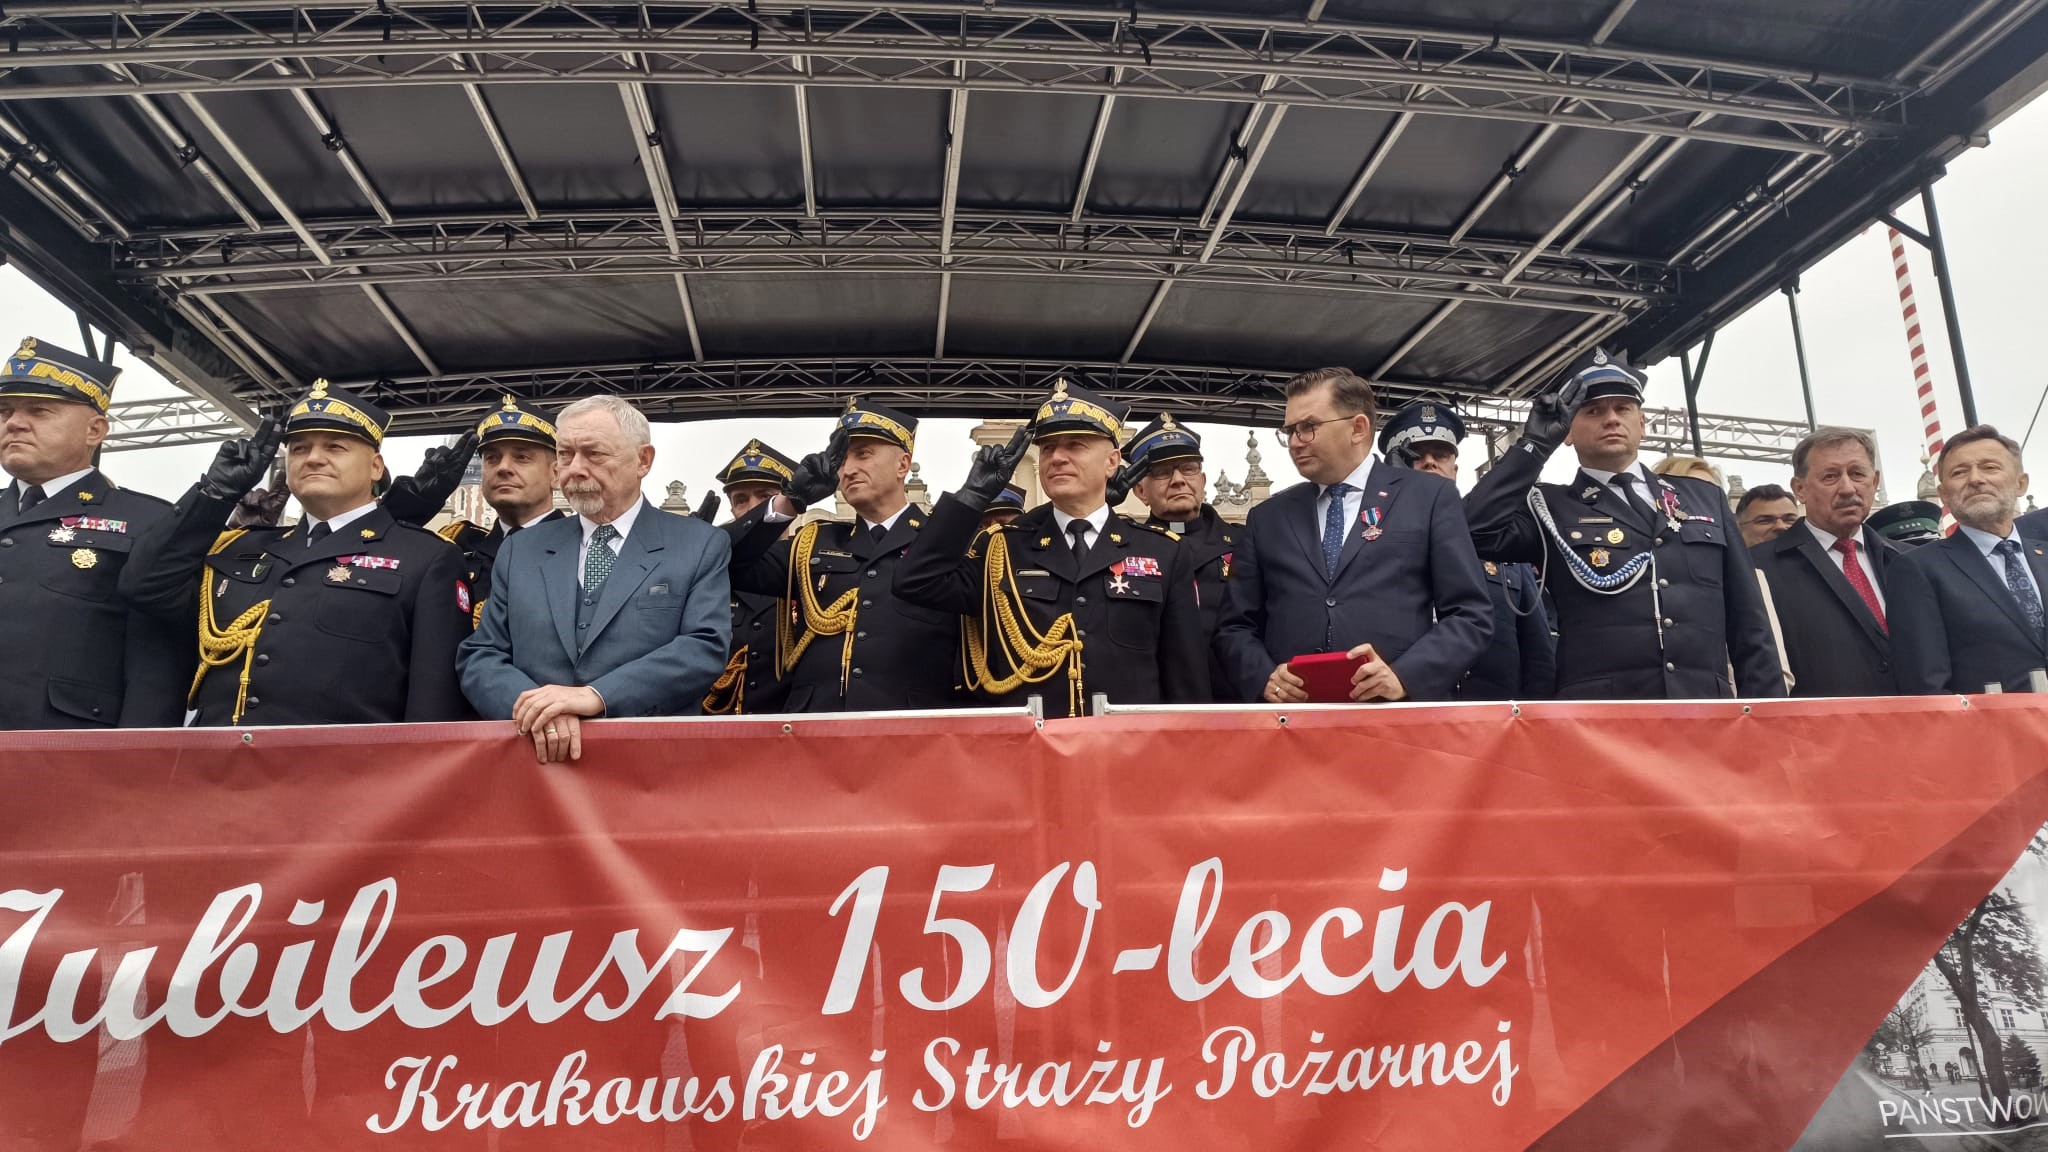 Na scenie stoją strażacy i osoby cywilne, strażacy salutują,. na dole napis na czerwonym tle Jubileusz 150-lecia Krakowskiej Straży Pożarnej